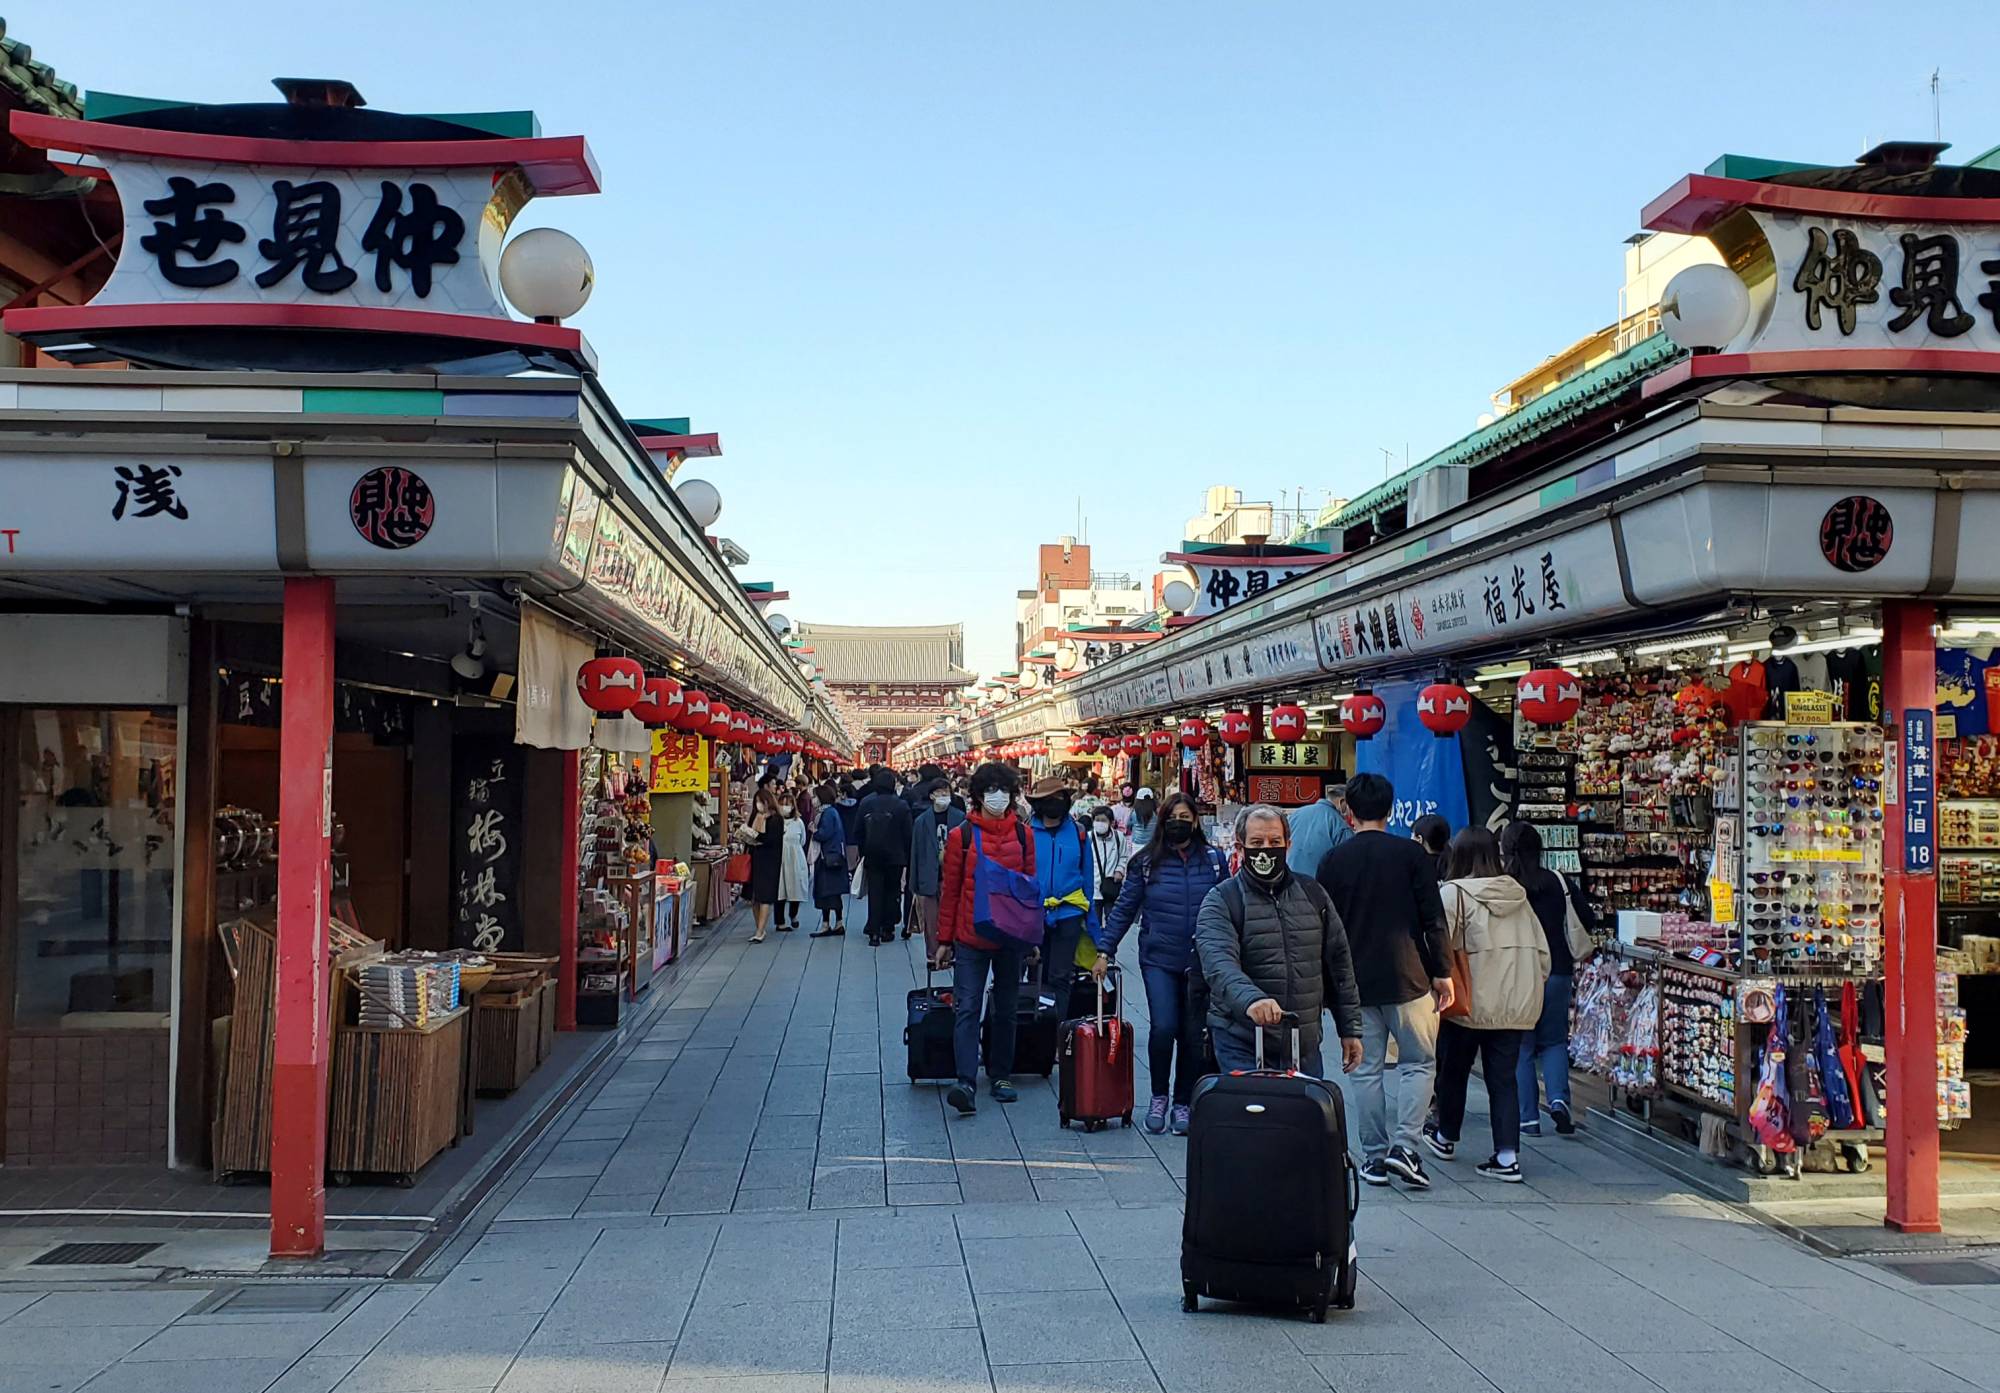 Du lịch chất lượng cao cho tầng lớp thượng lưu ở Nhật Bản - Ảnh 1.